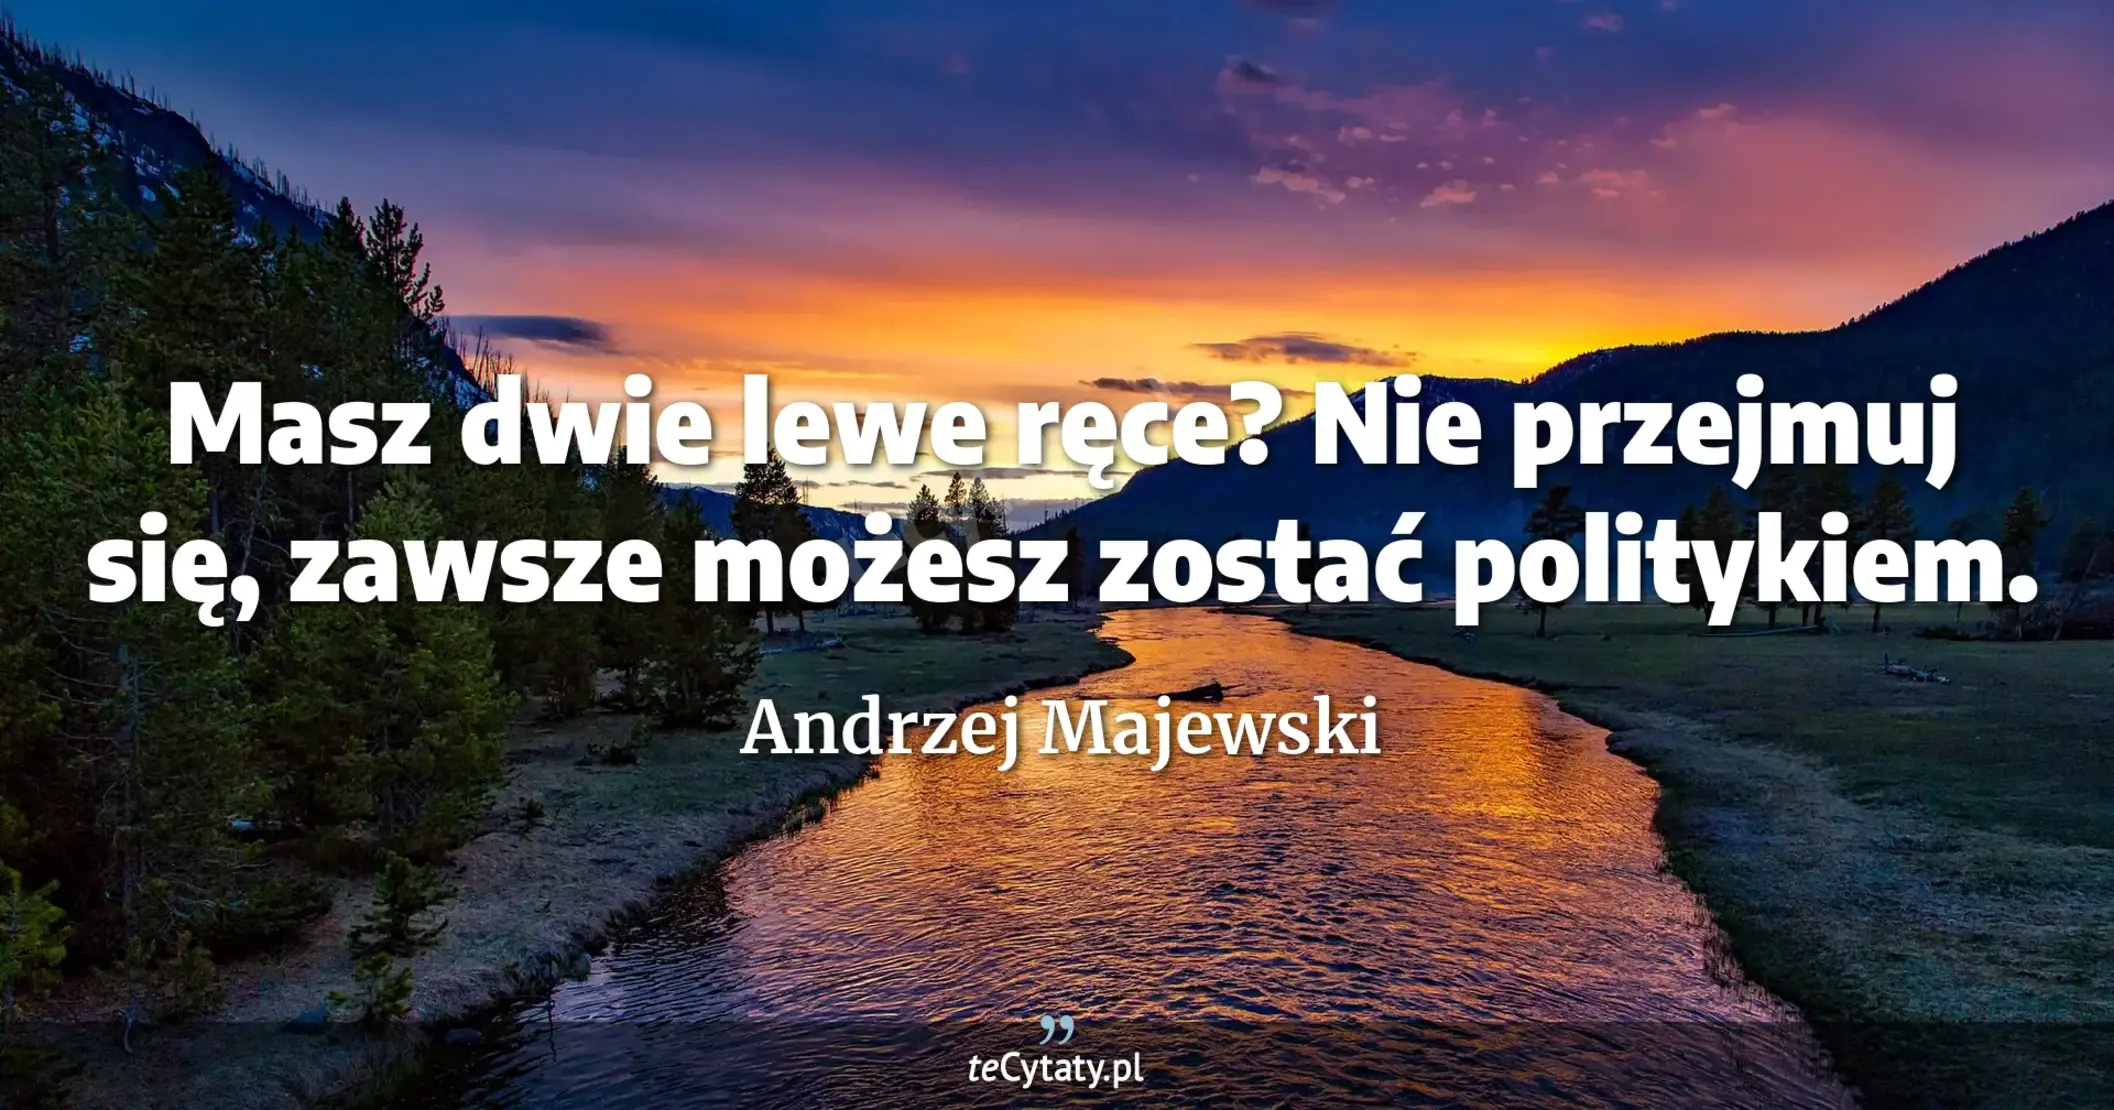 Masz dwie lewe ręce? Nie przejmuj się, zawsze możesz zostać politykiem. - Andrzej Majewski